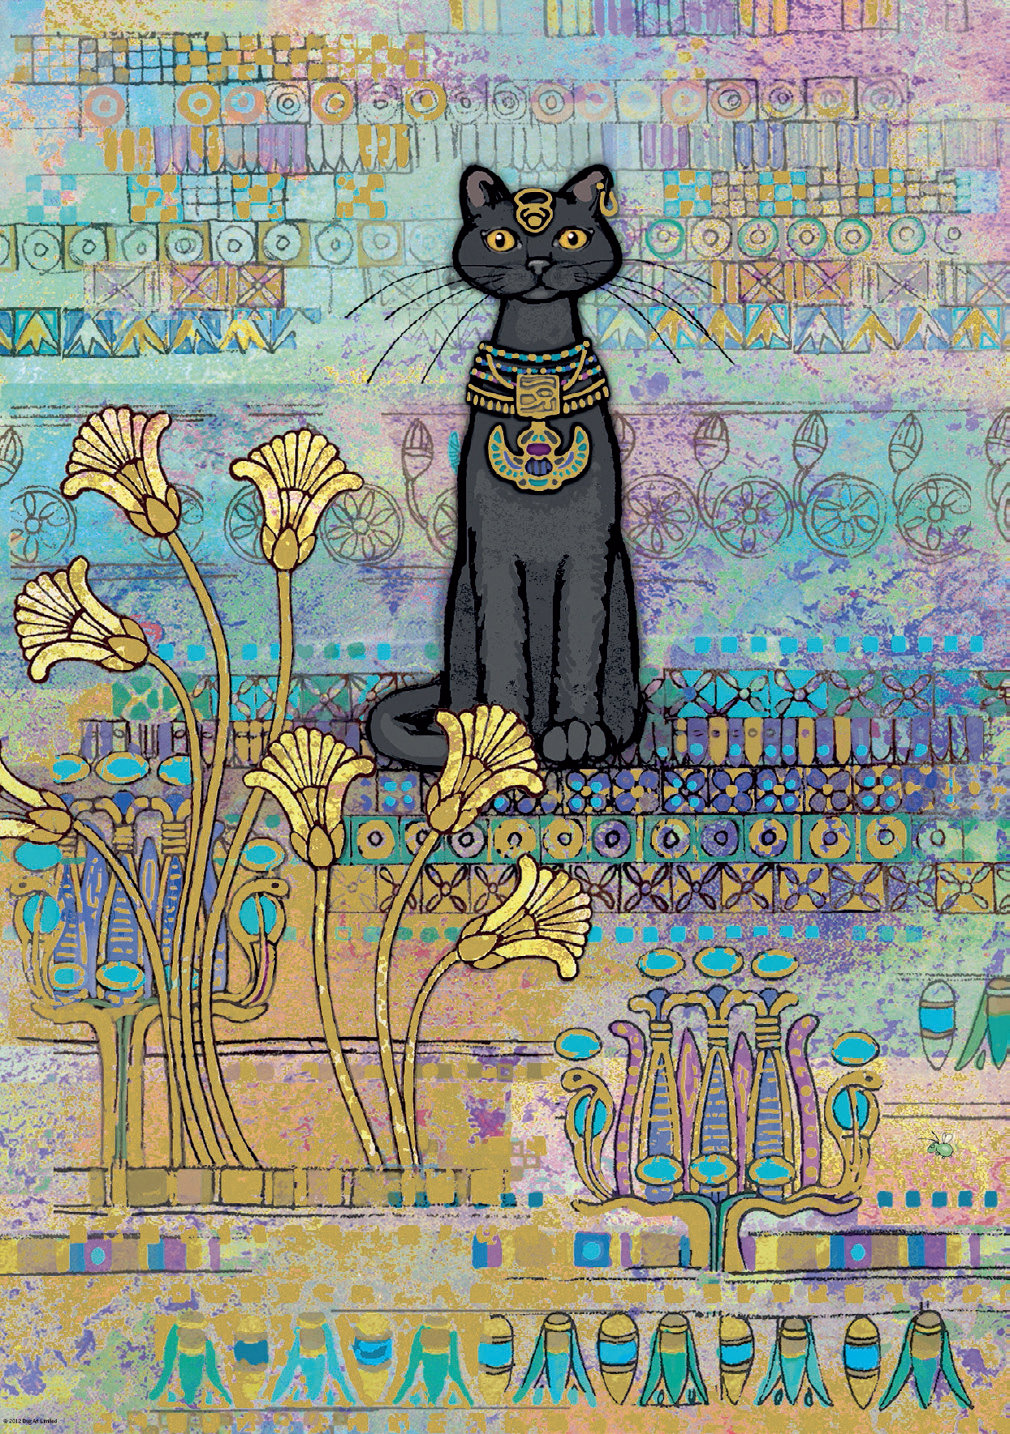 [재고 있음] HEYE 이집트 고양이 야옹 야옹 1000 피스 독일 수입 퍼즐 우아한 고양이 르누아르